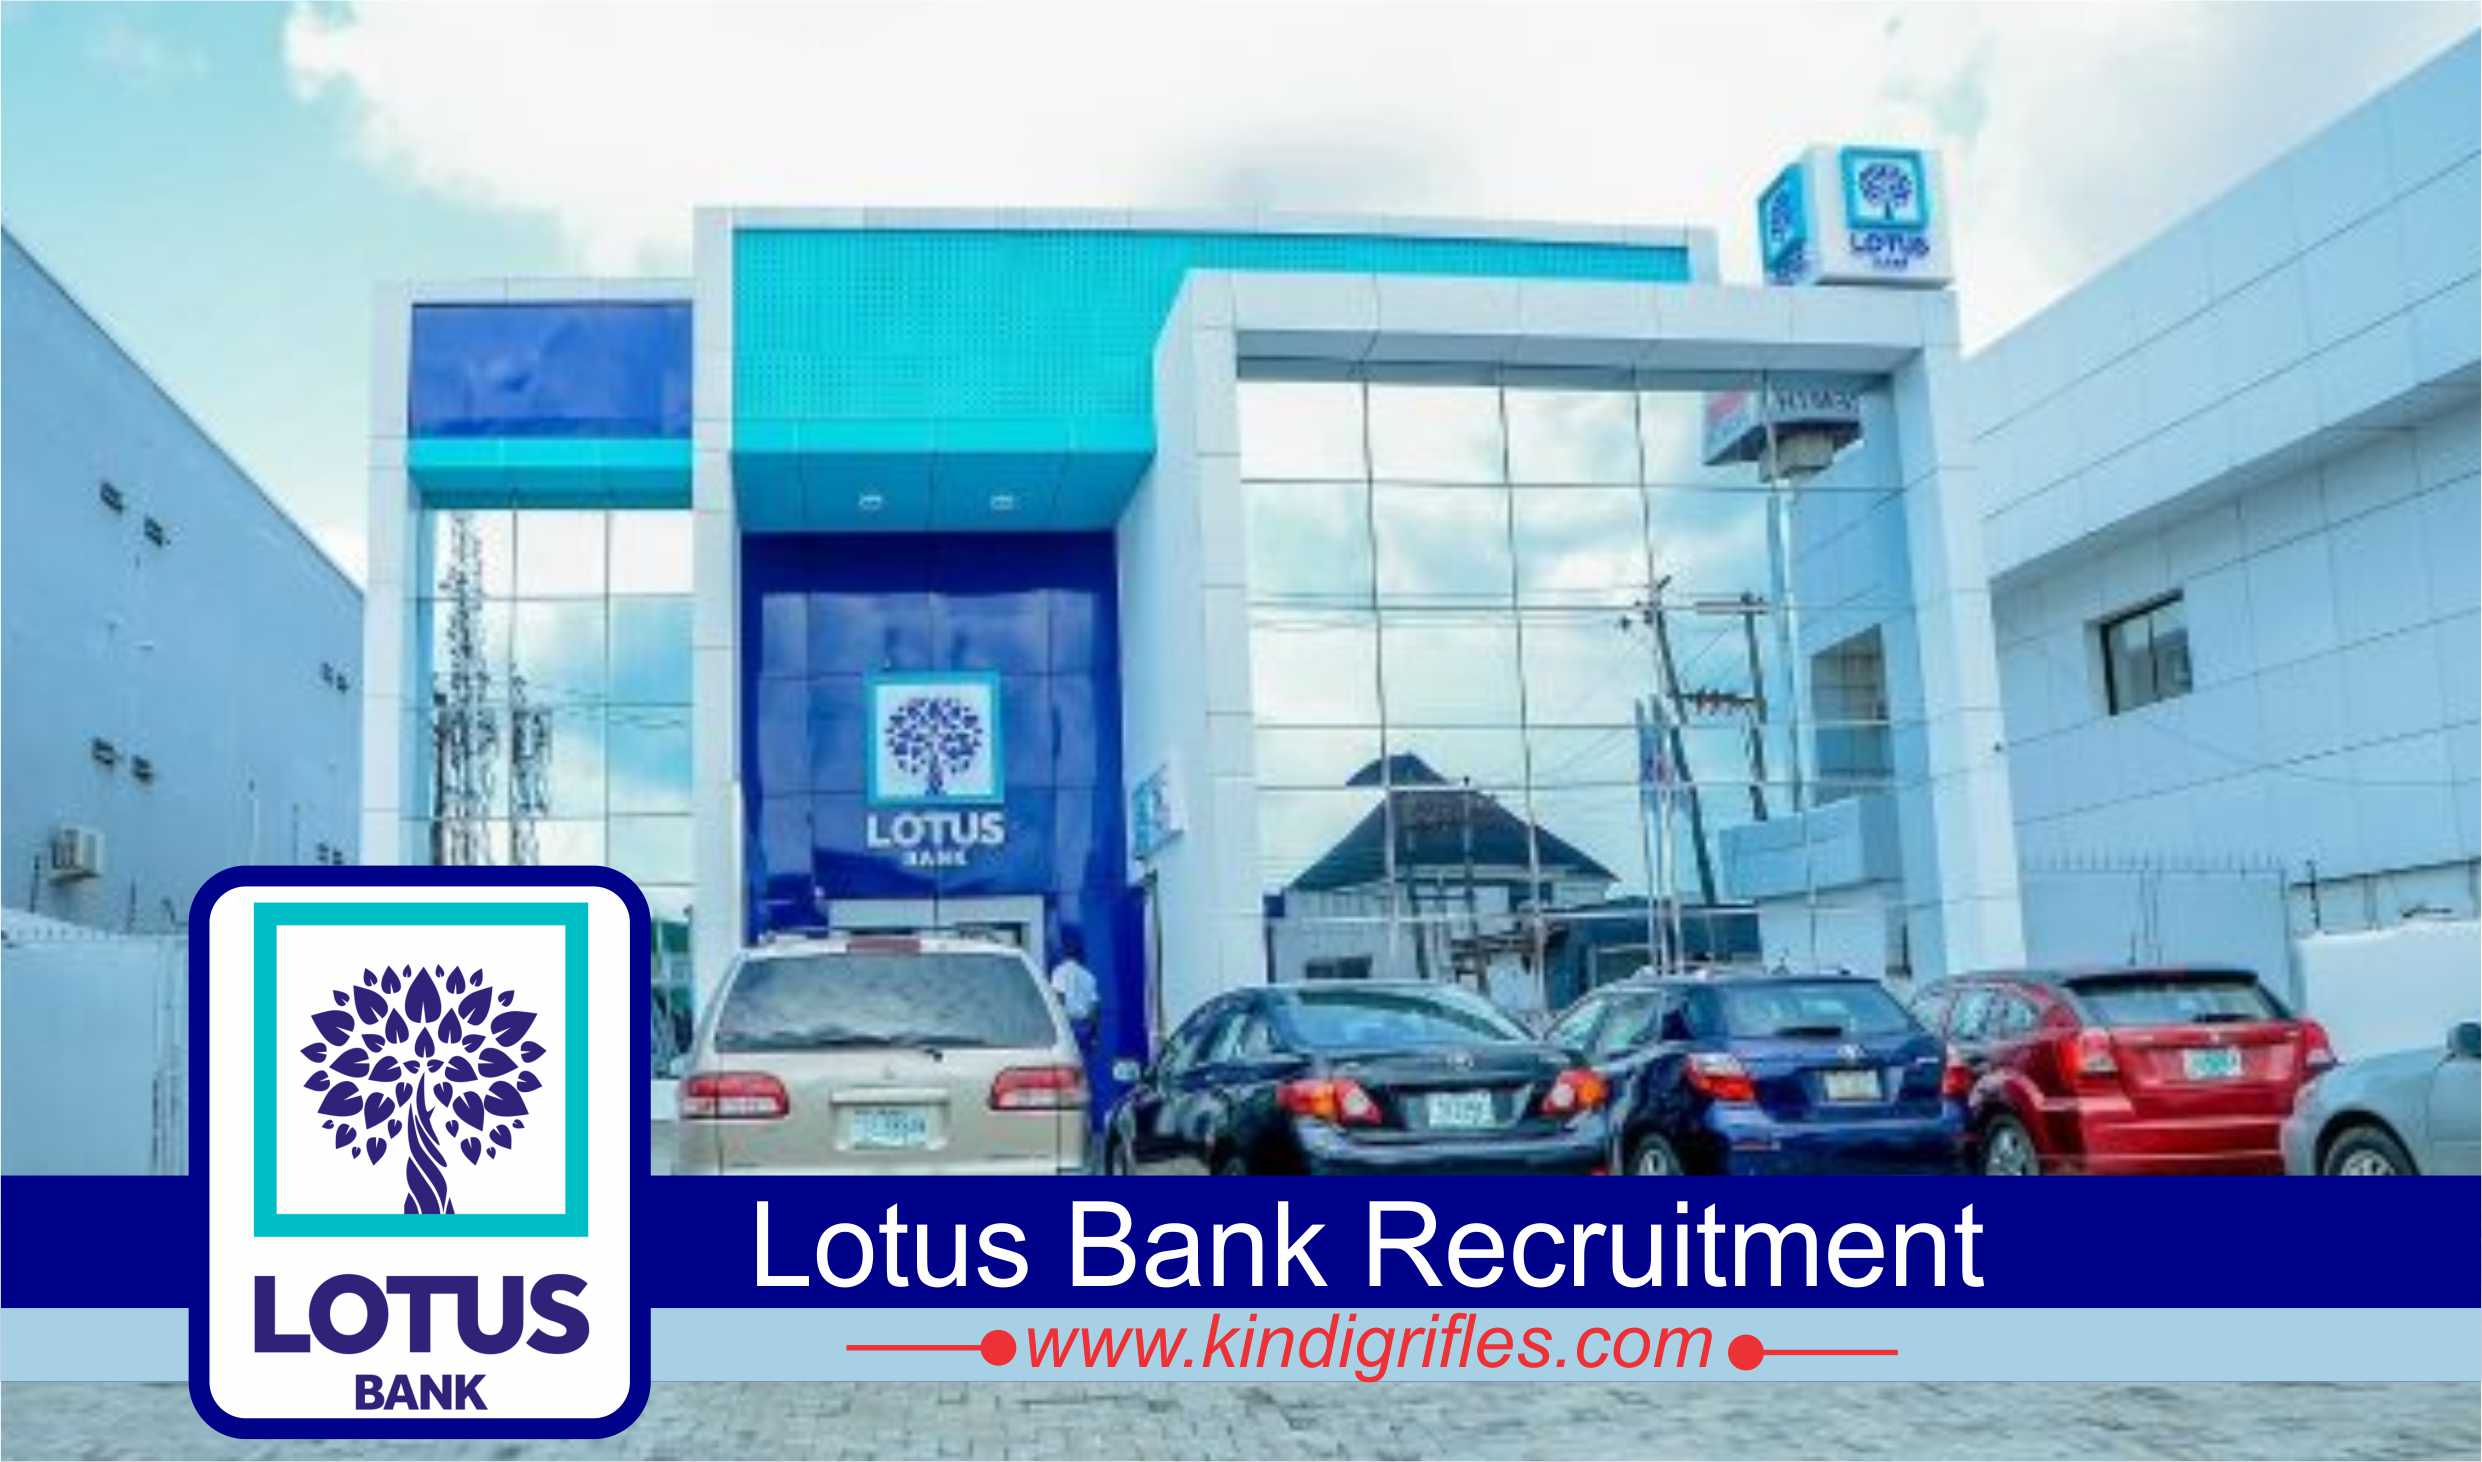 Lotus Bank Recruitment